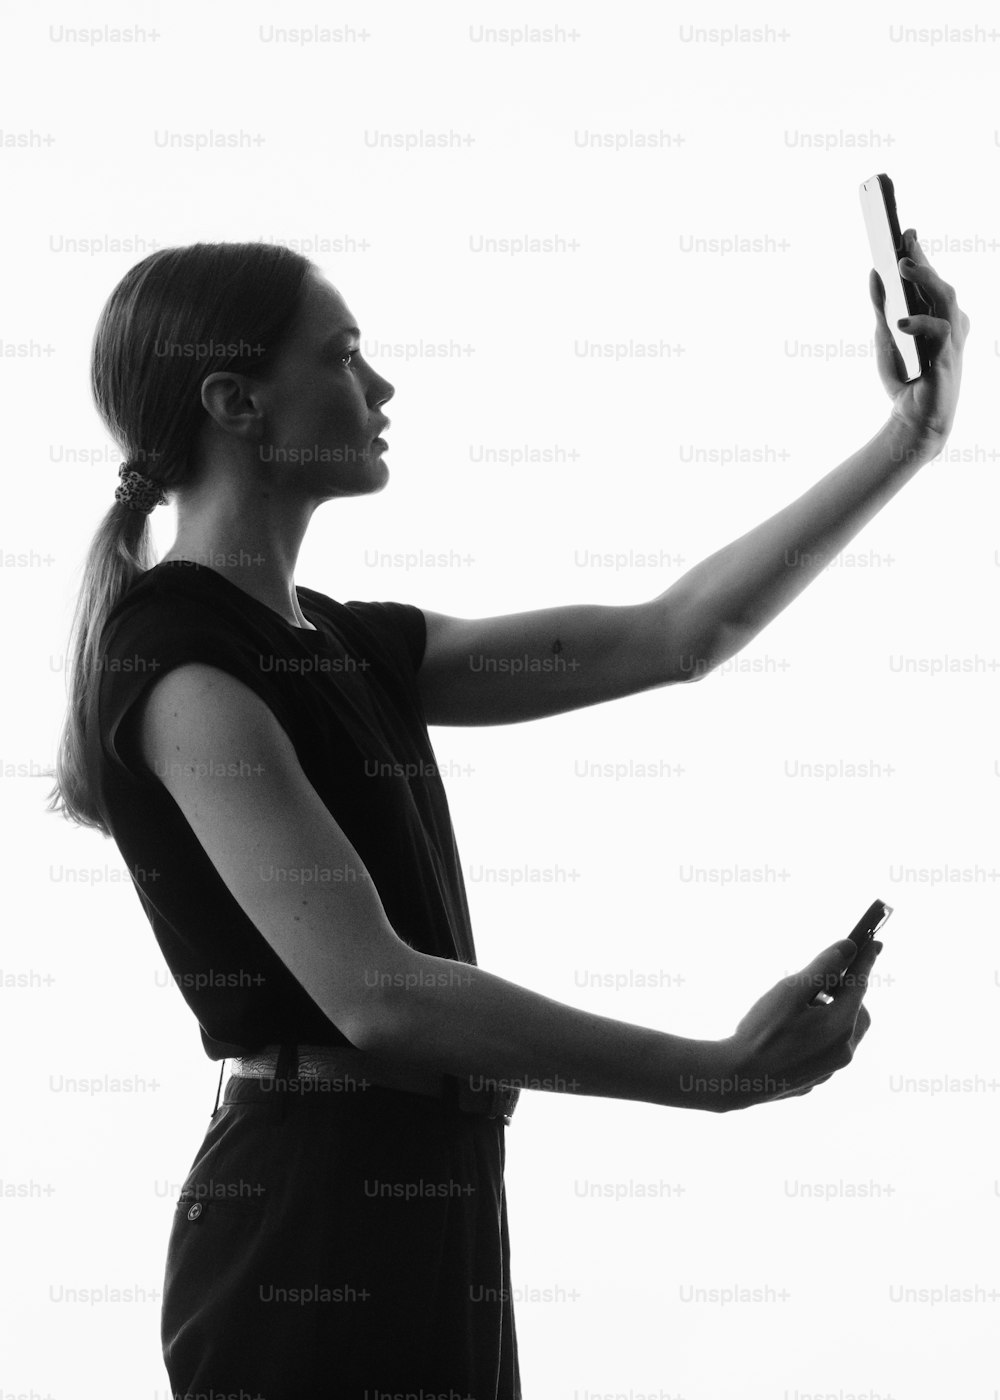 Une femme prenant une photo avec son téléphone portable